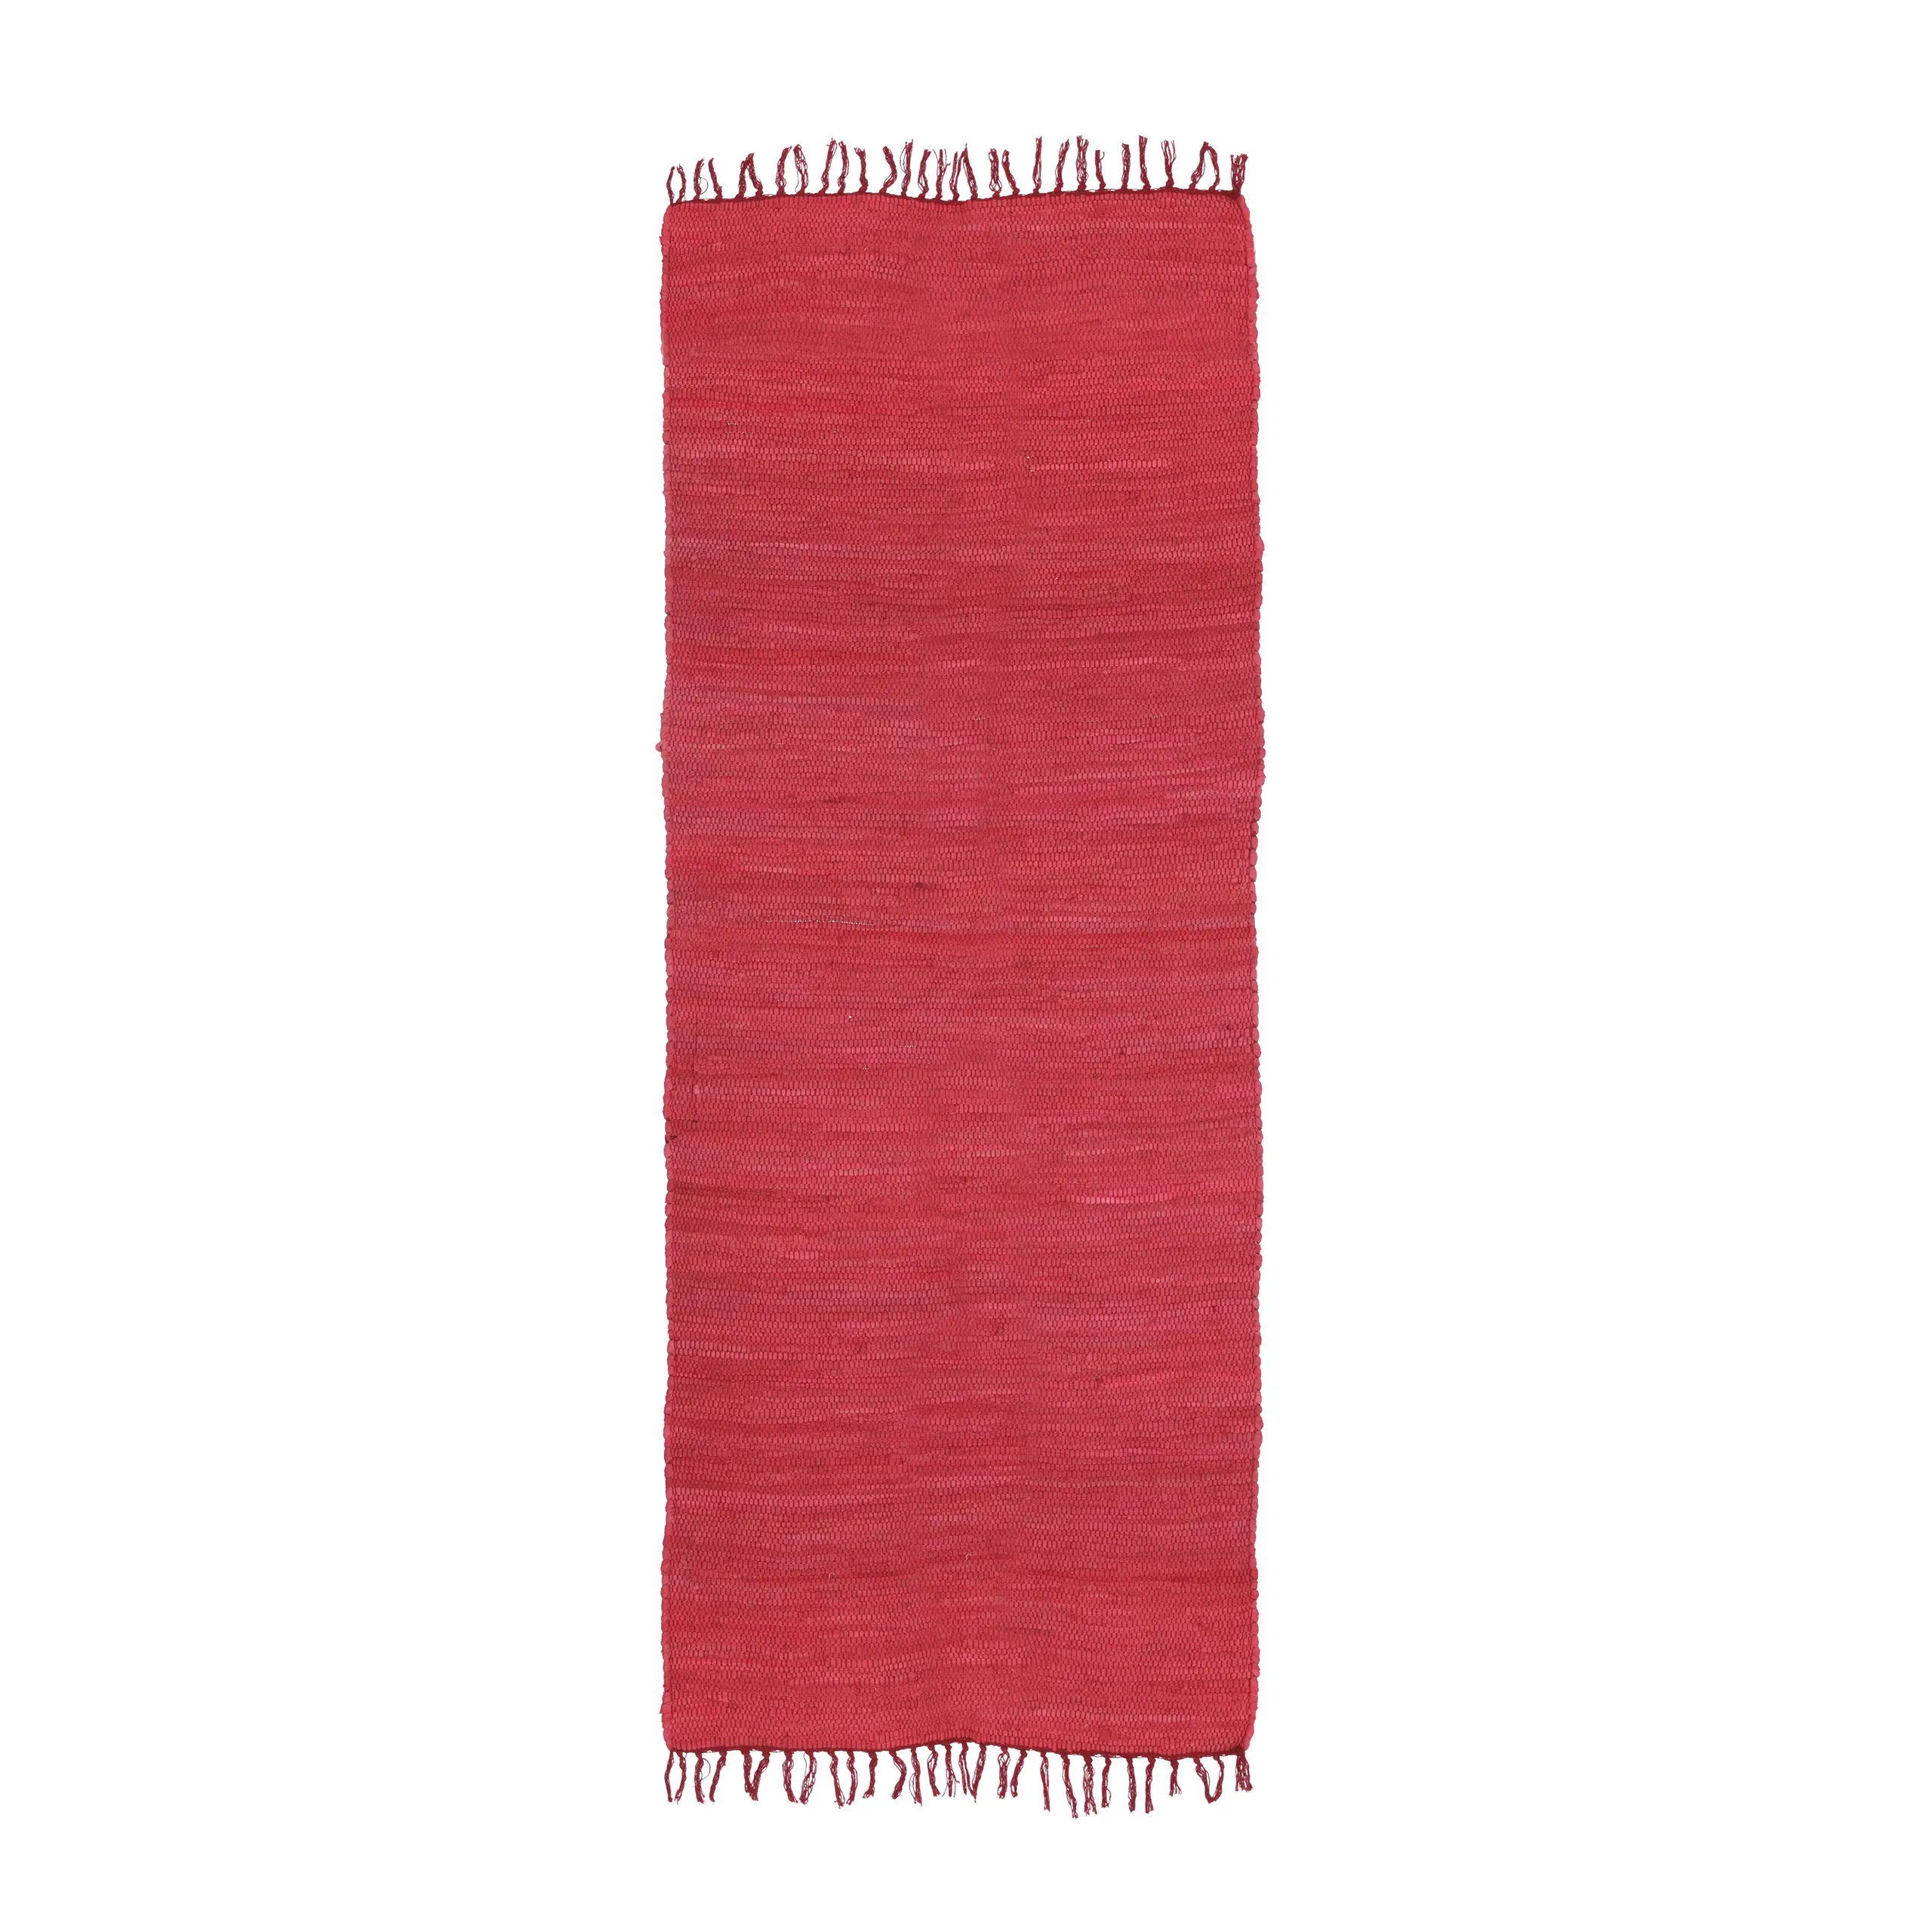 Baumwolle Flickenteppich aus Roter